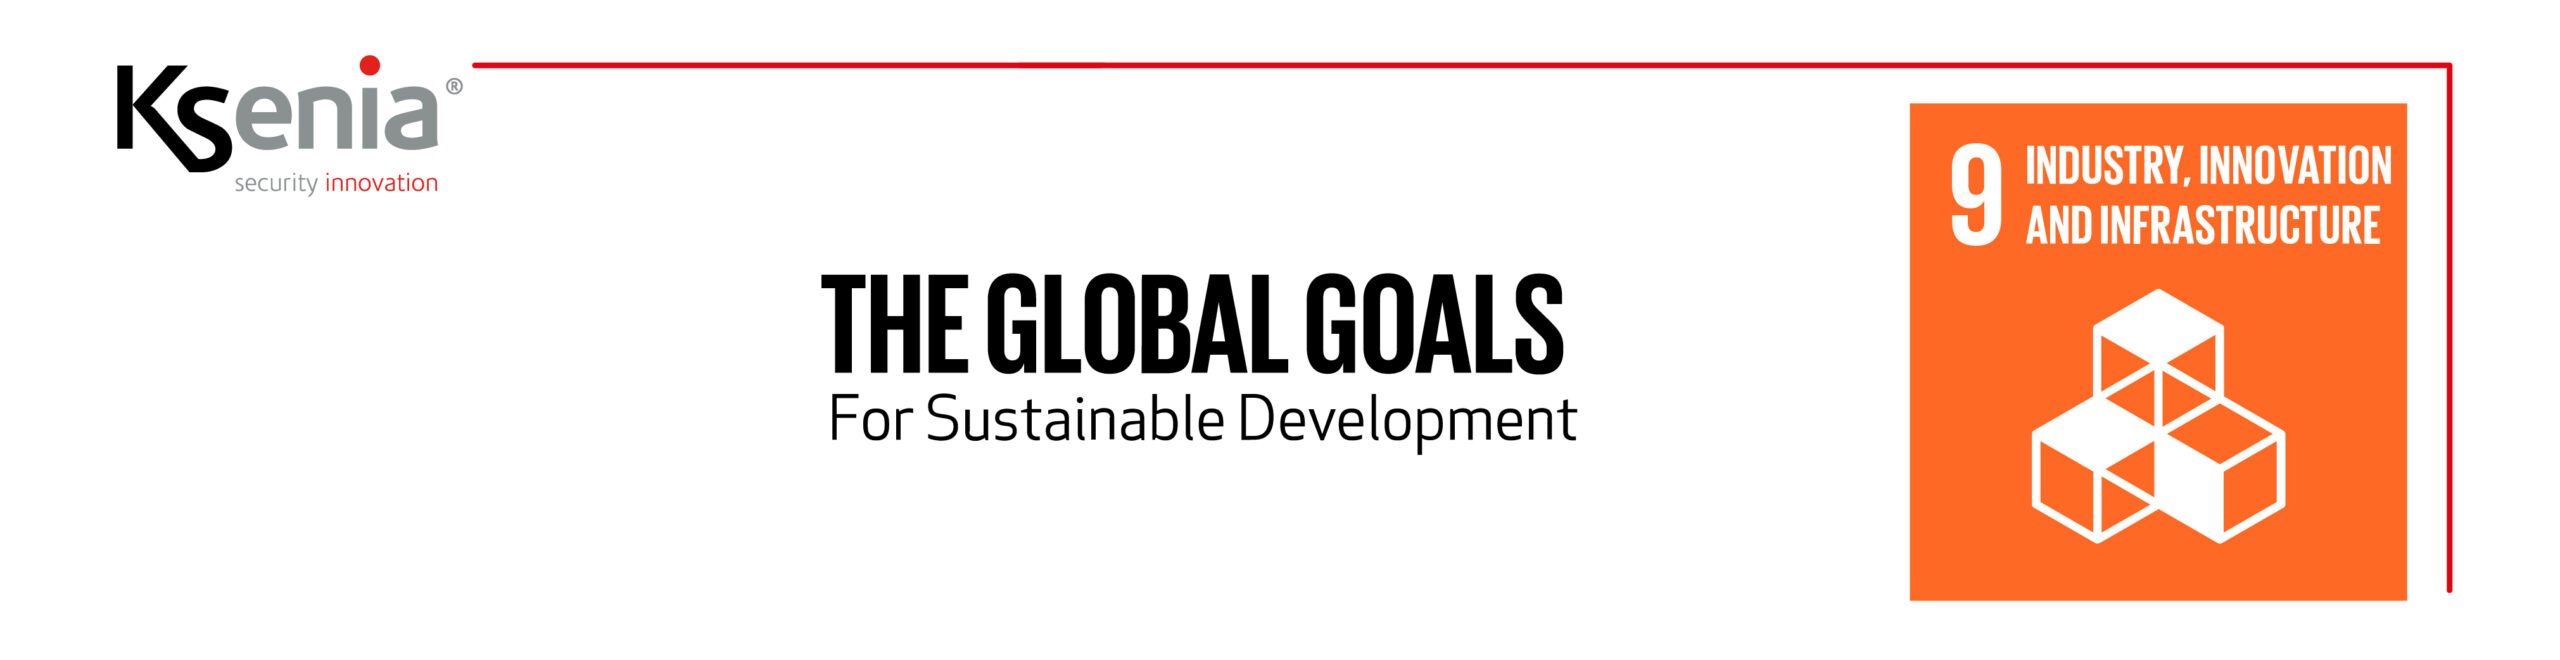 come ci muoviamo per essere preparati agli appuntamenti proposti dal Global Goals